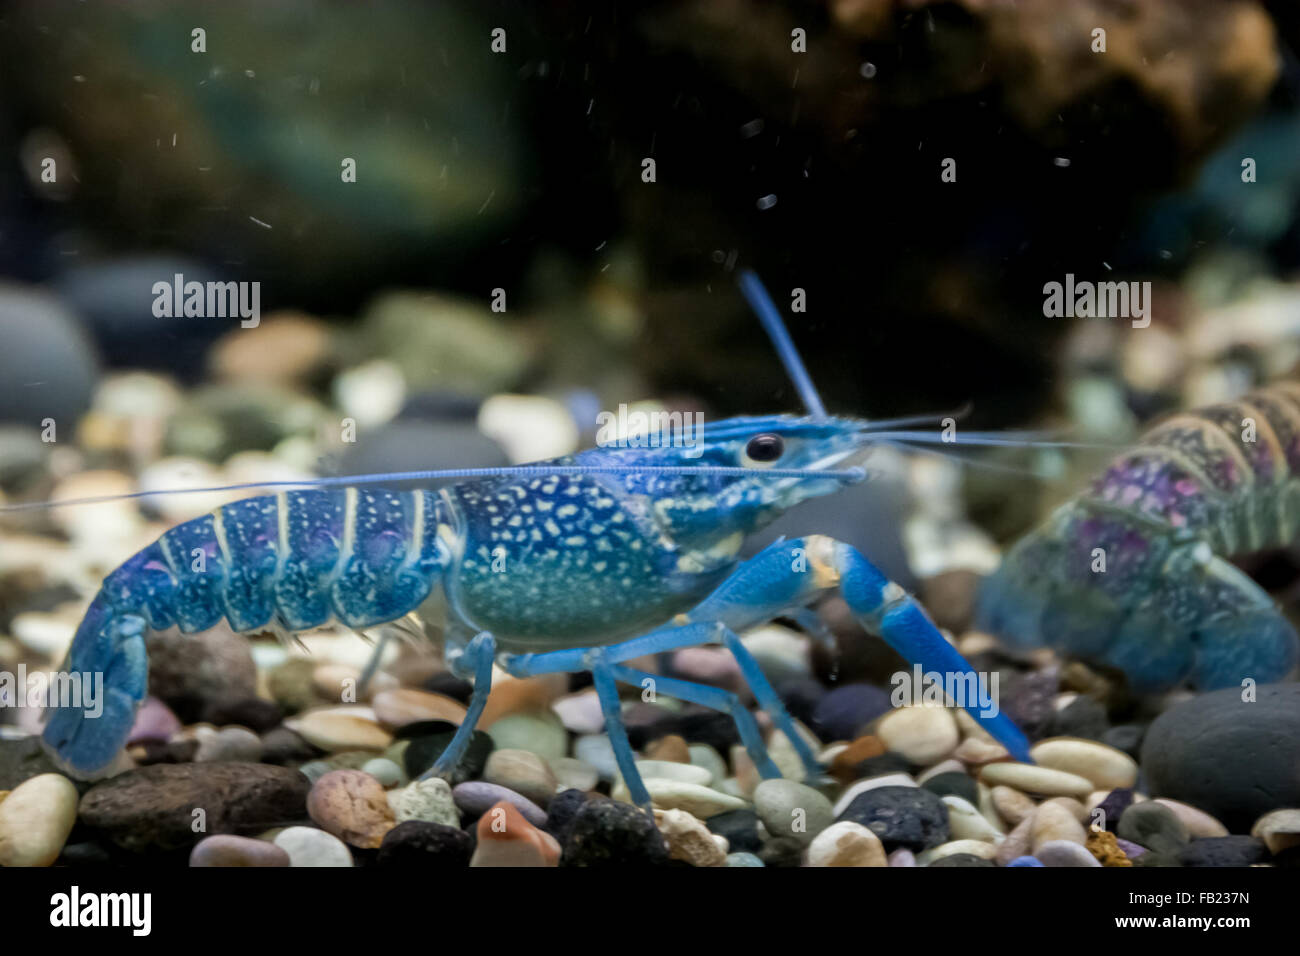 L'écrevisse Procambarus alleni (bleu) dans l'aquarium. Banque D'Images